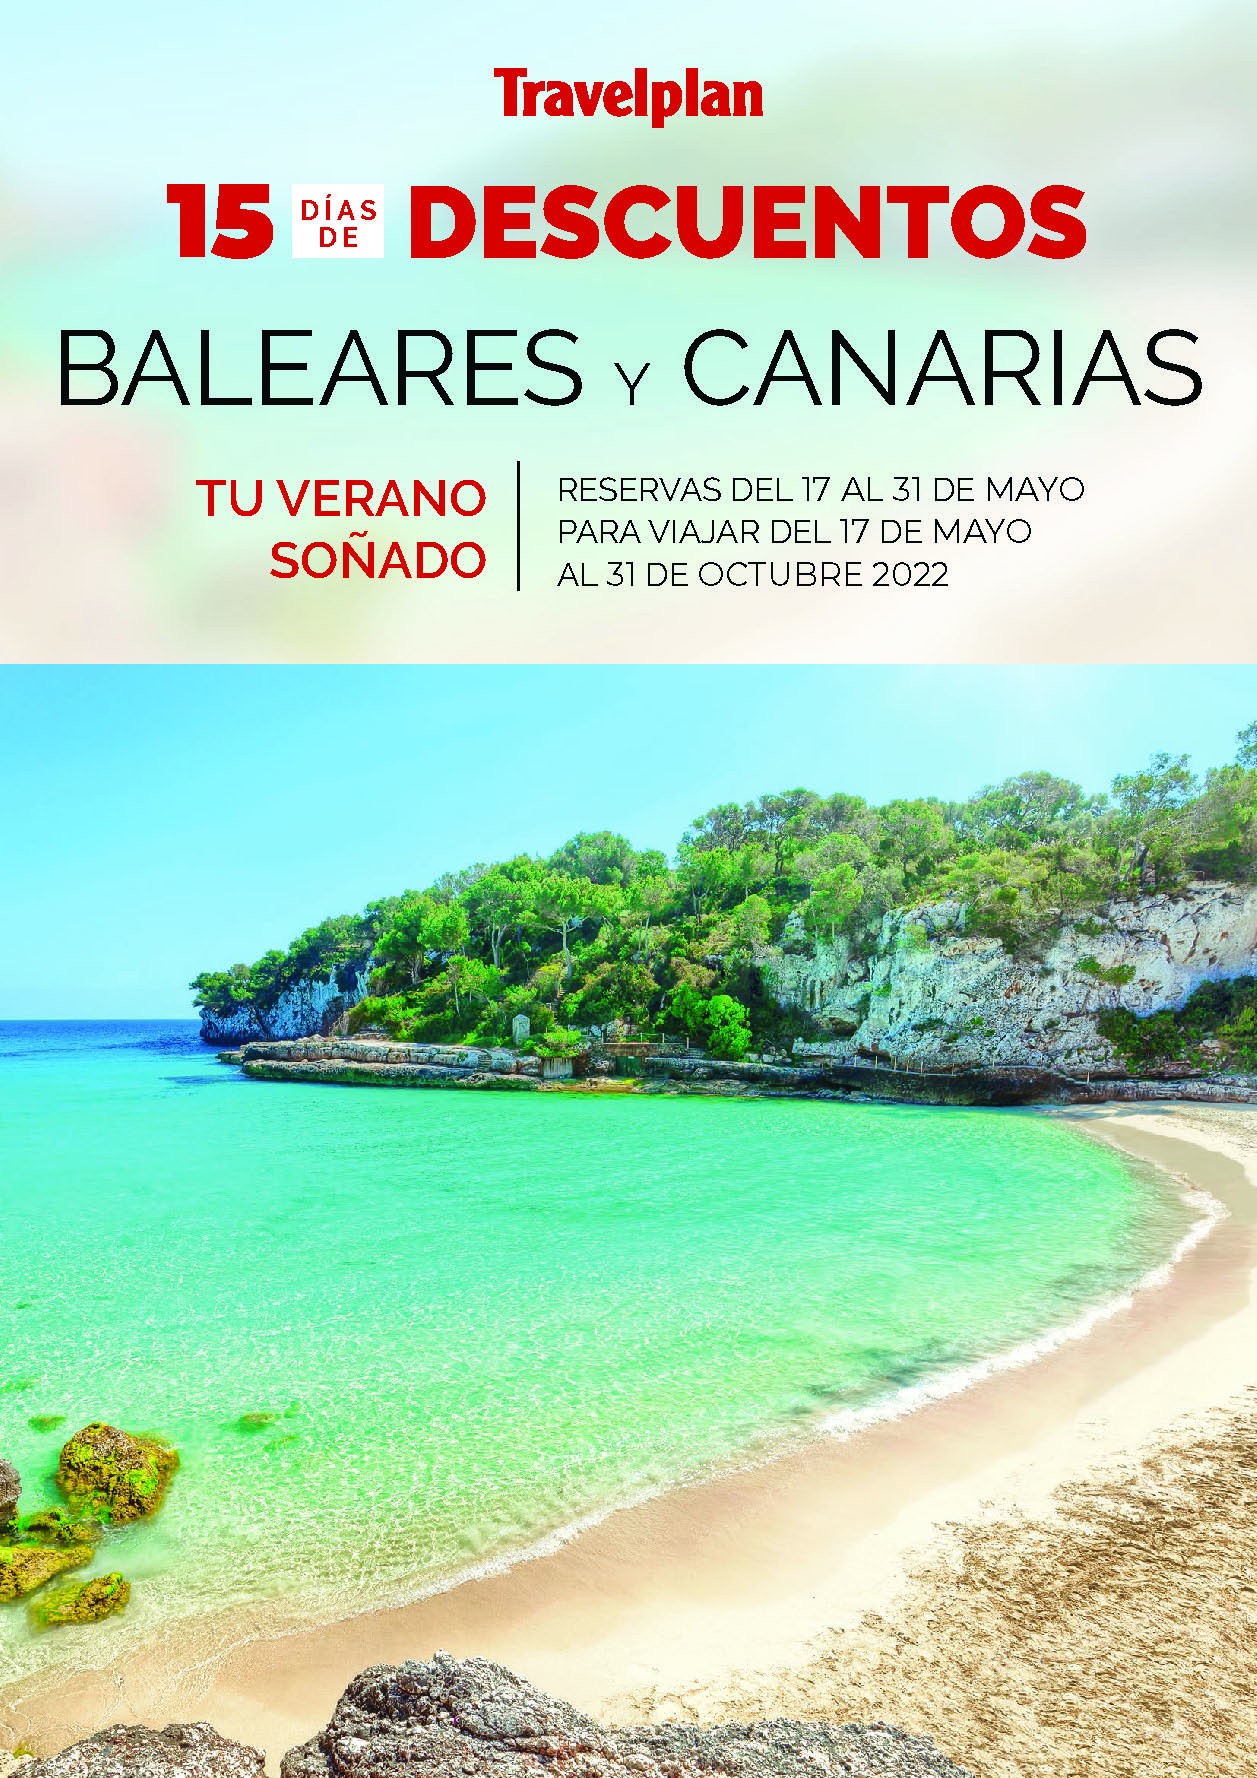 Ofertas Travelplan Mayo 2022 vacaciones en Baleares y Canarias con descuentos salidas de Mayo a Octubre de 2022